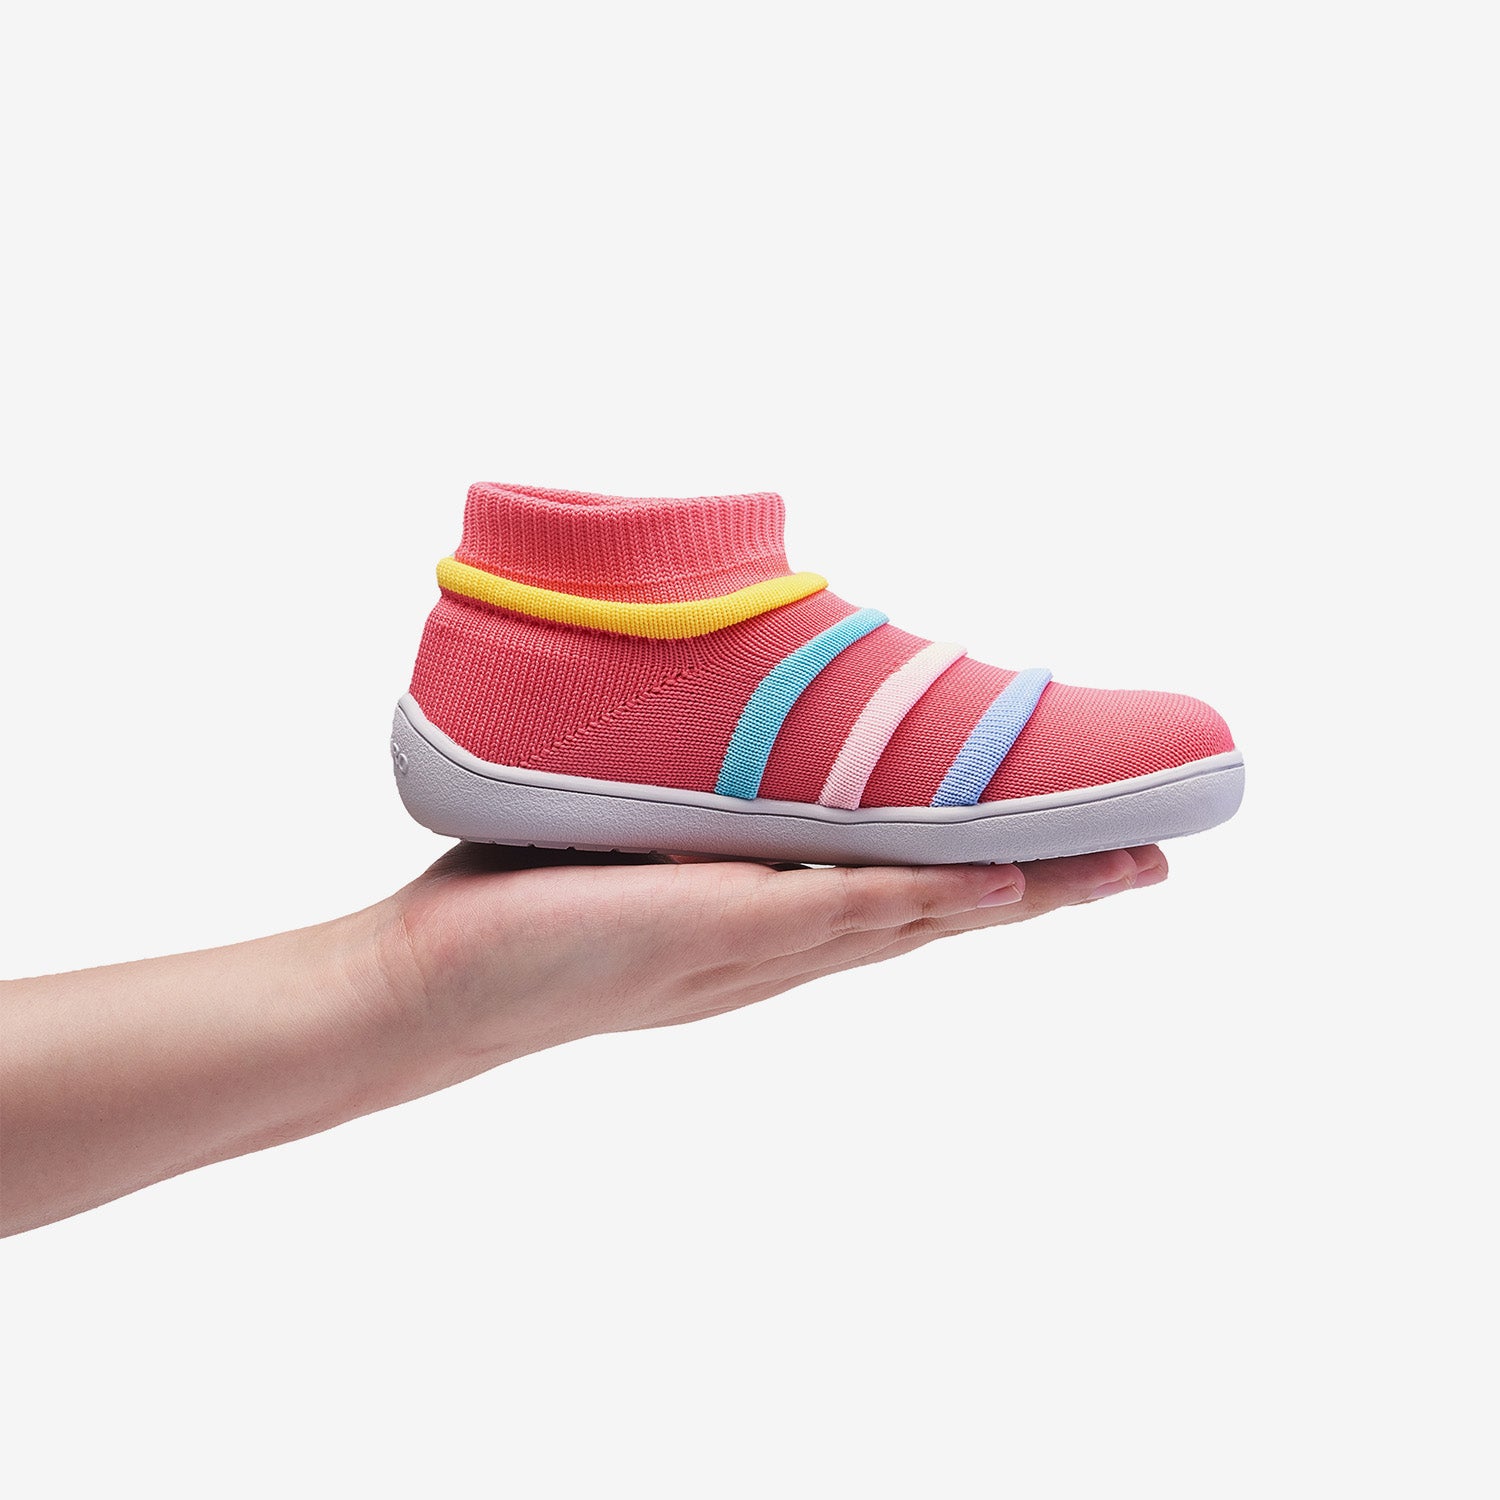 Crianças Agile II - Sapatos Descalços